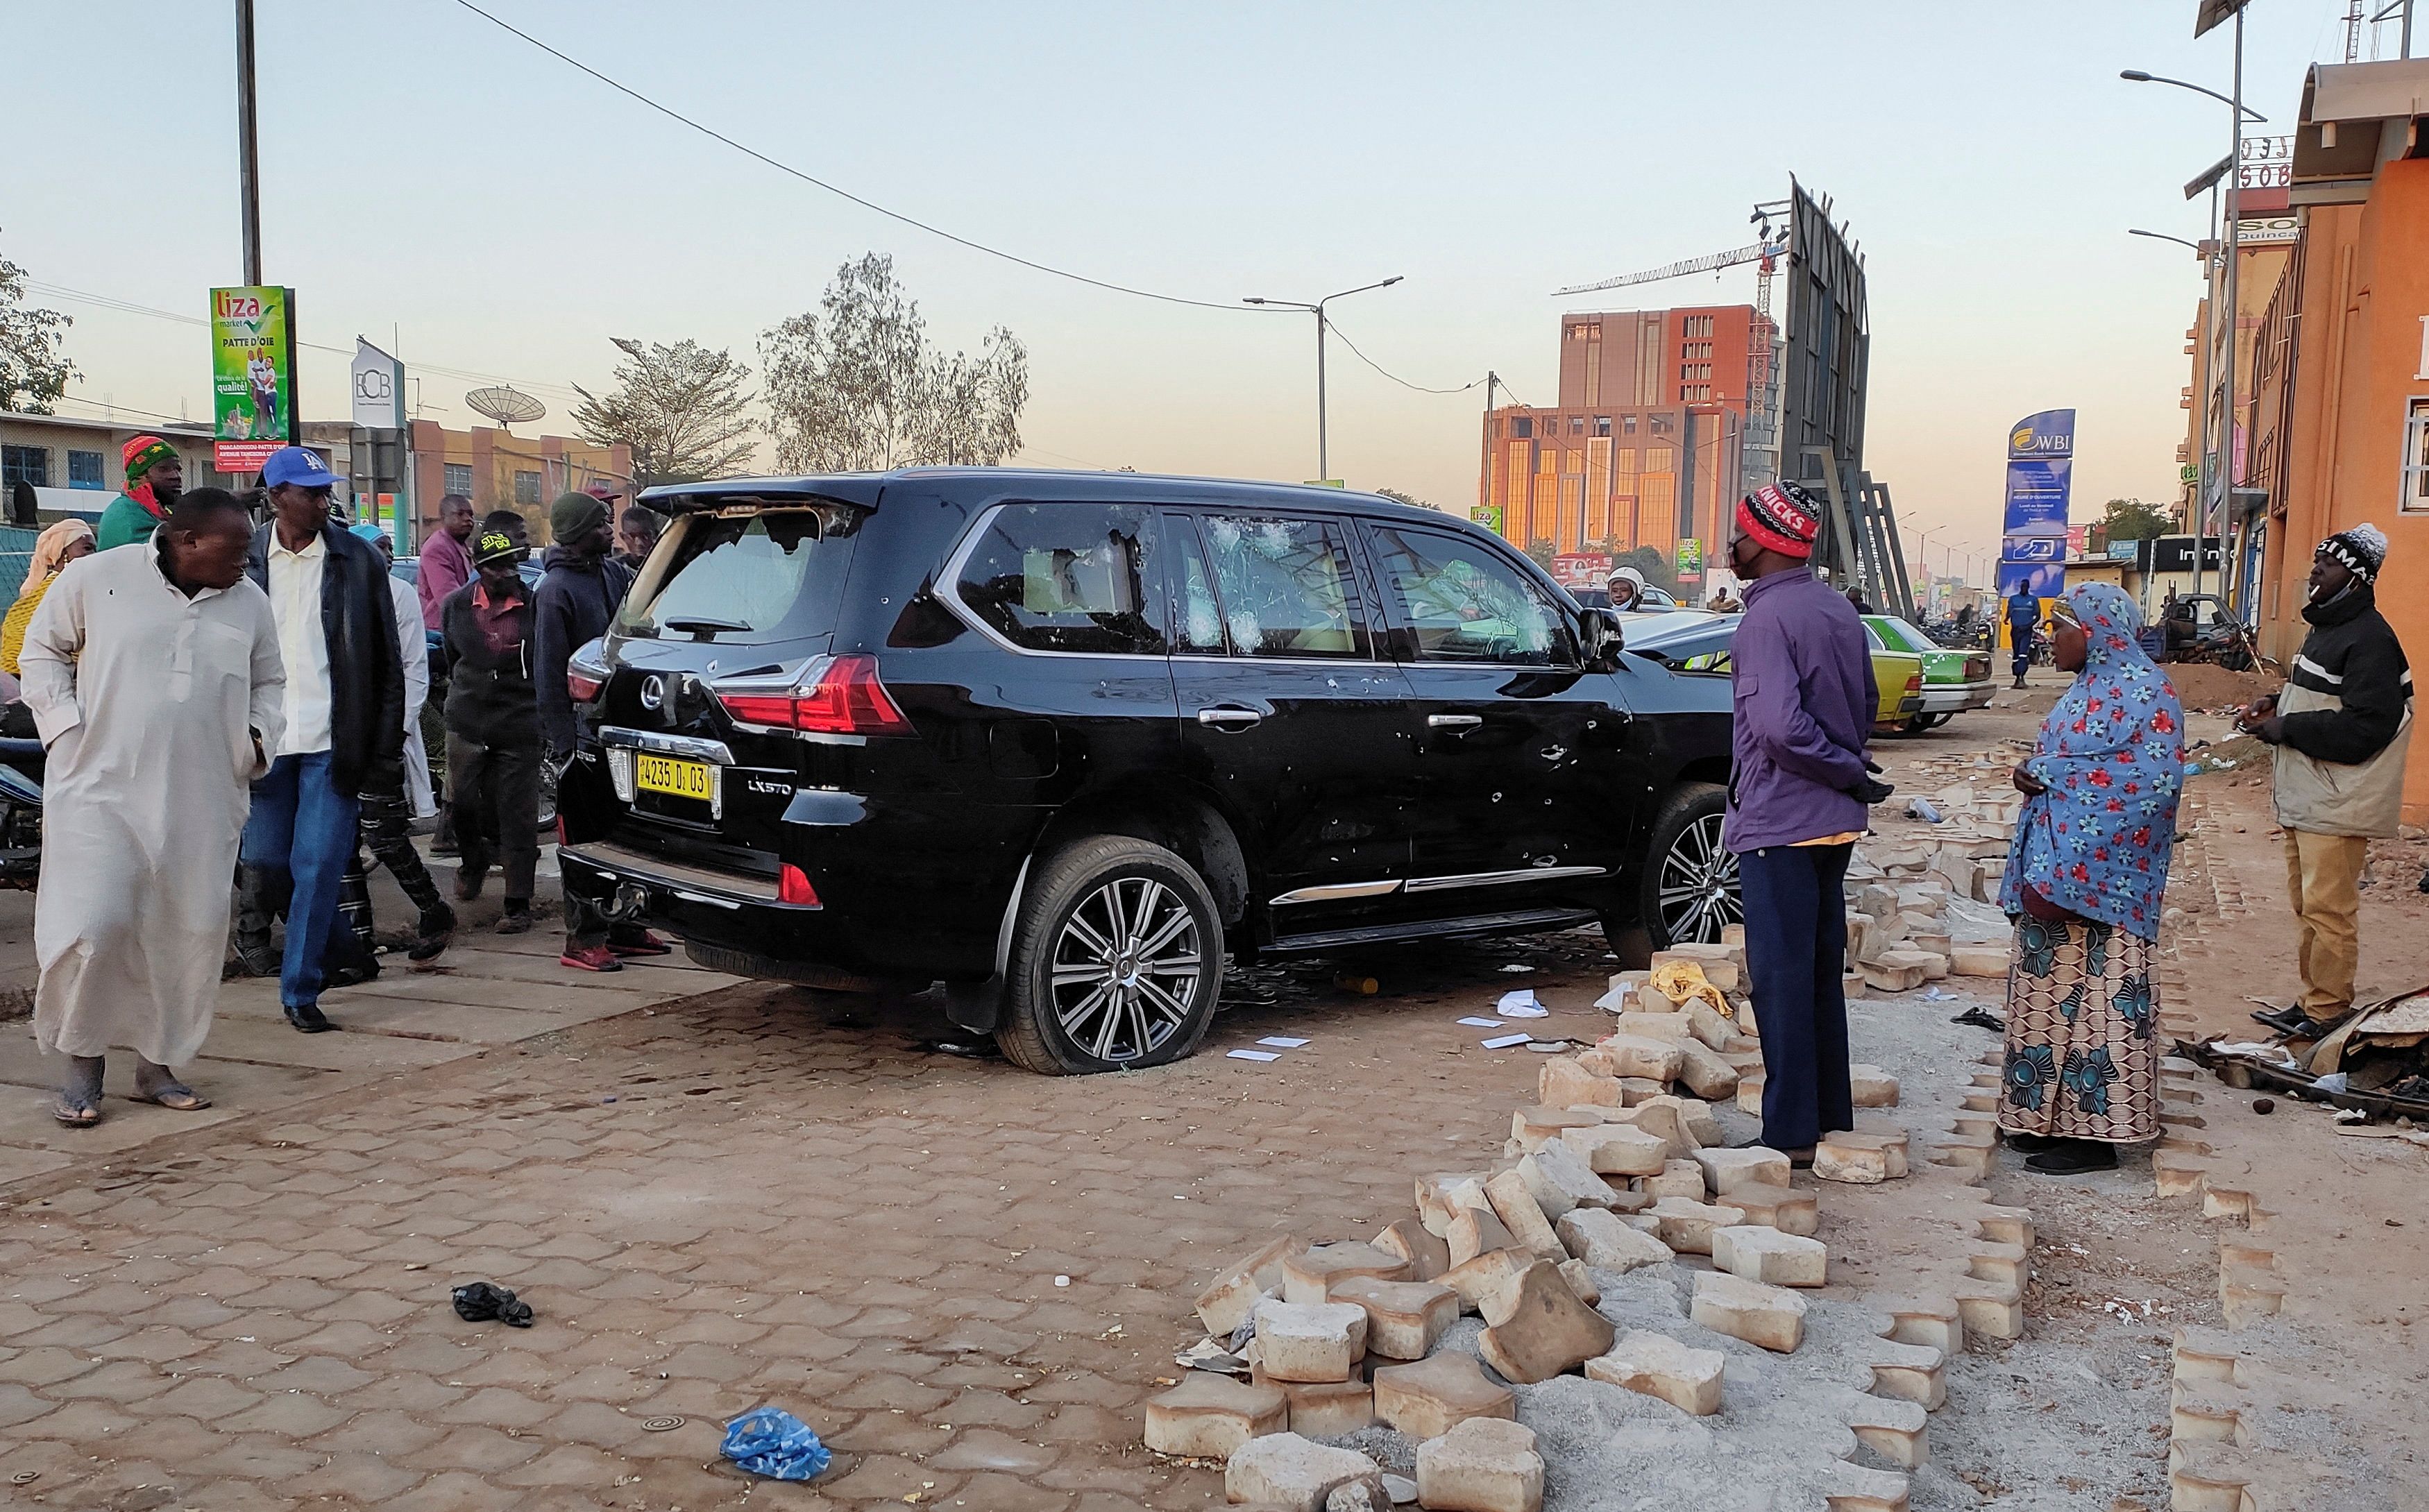 Golyólyukak láthatók egy autóban, amely az elnökséghez tartozik, miután heves lövöldözések történtek Roch Kabore elnök rezidenciája közelében Ouagadougou-ban, Burkina Fasóban 24. január 2022-én. REUTERS/Thiam Ndiaga